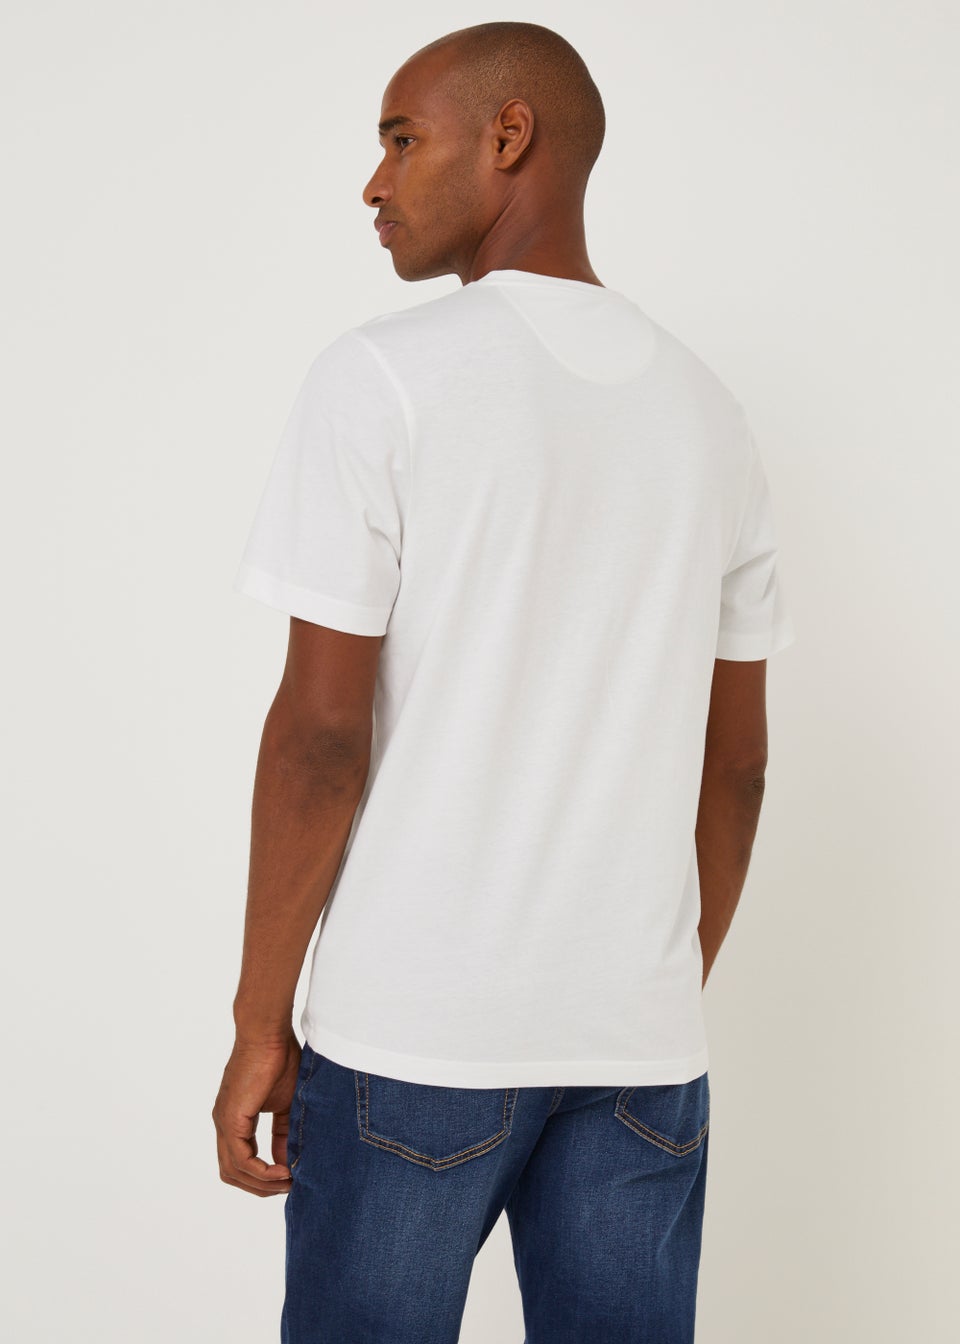 Farah Eddie White T-Shirt